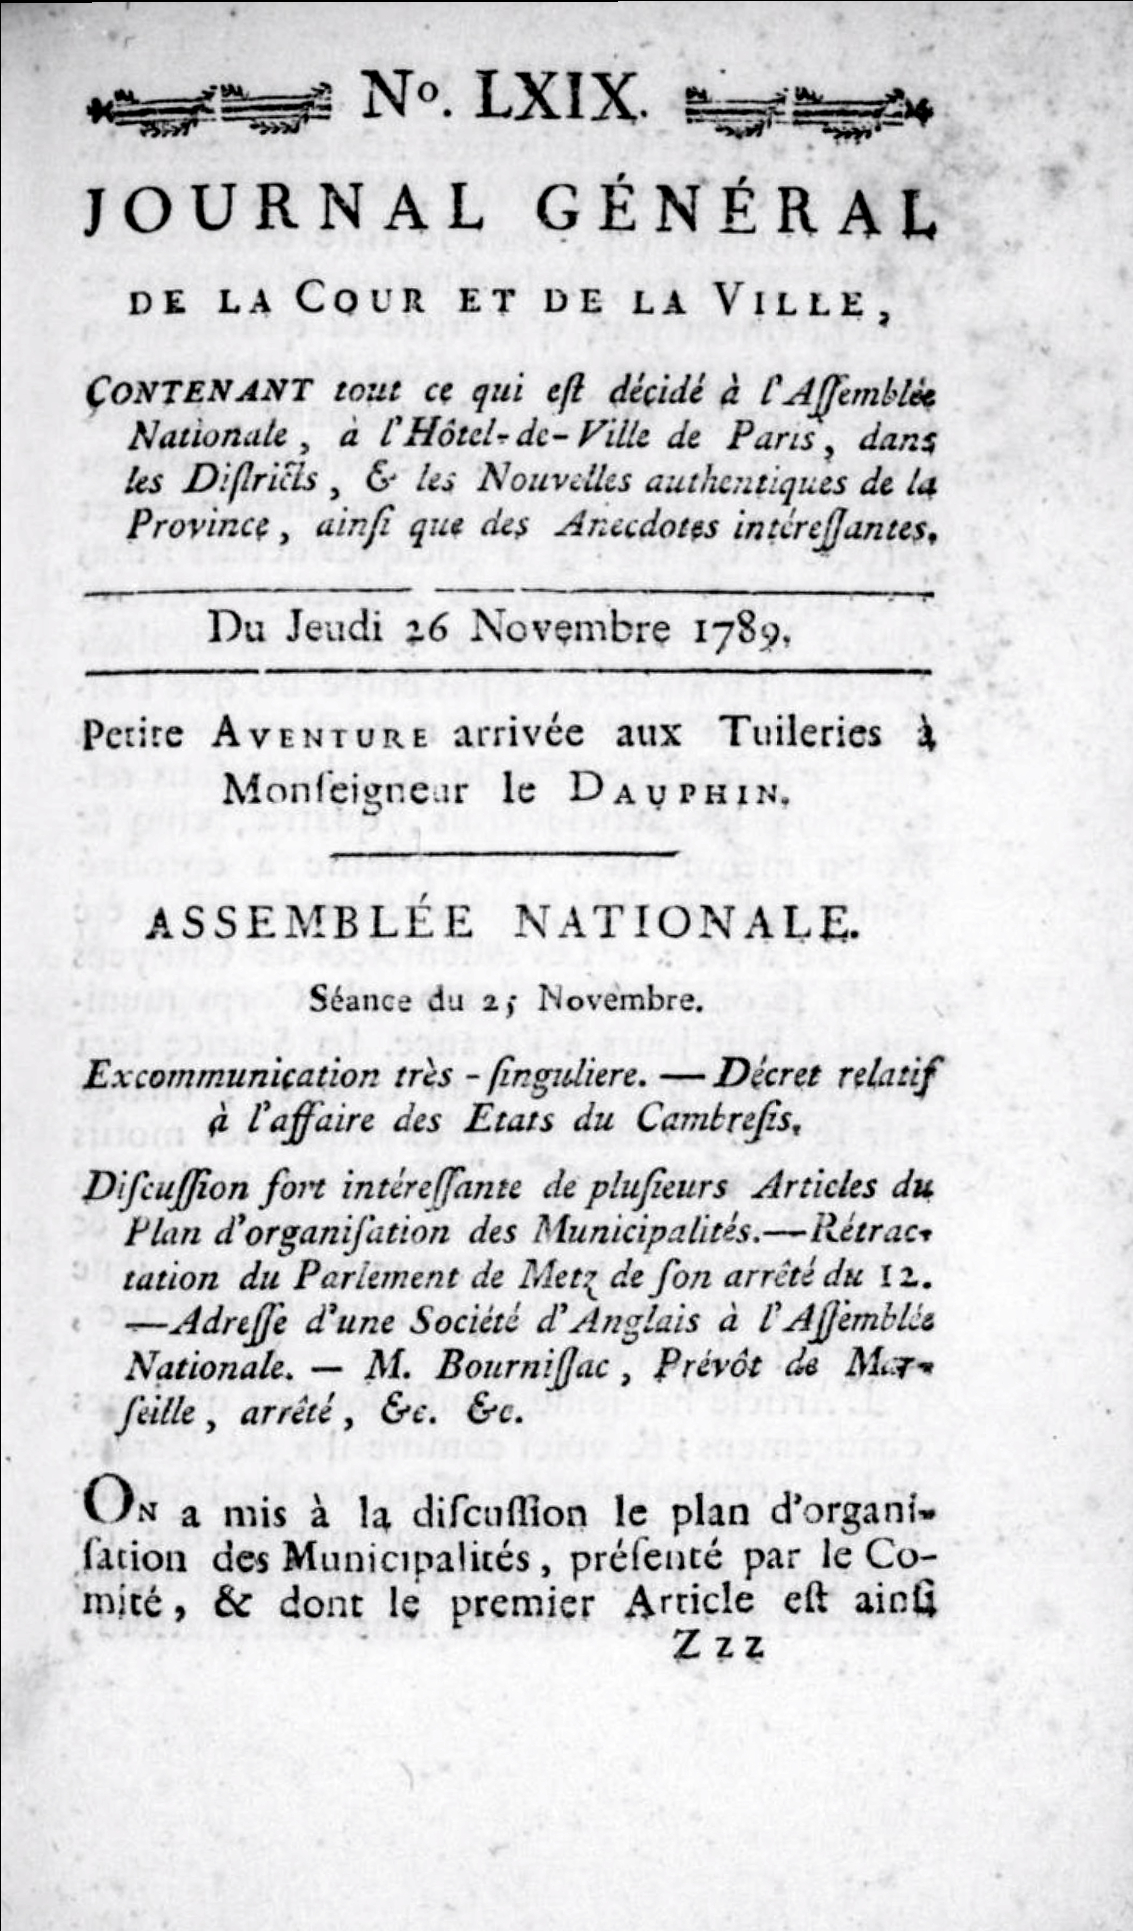 Journal général de la cour et de la ville (1789-1792)